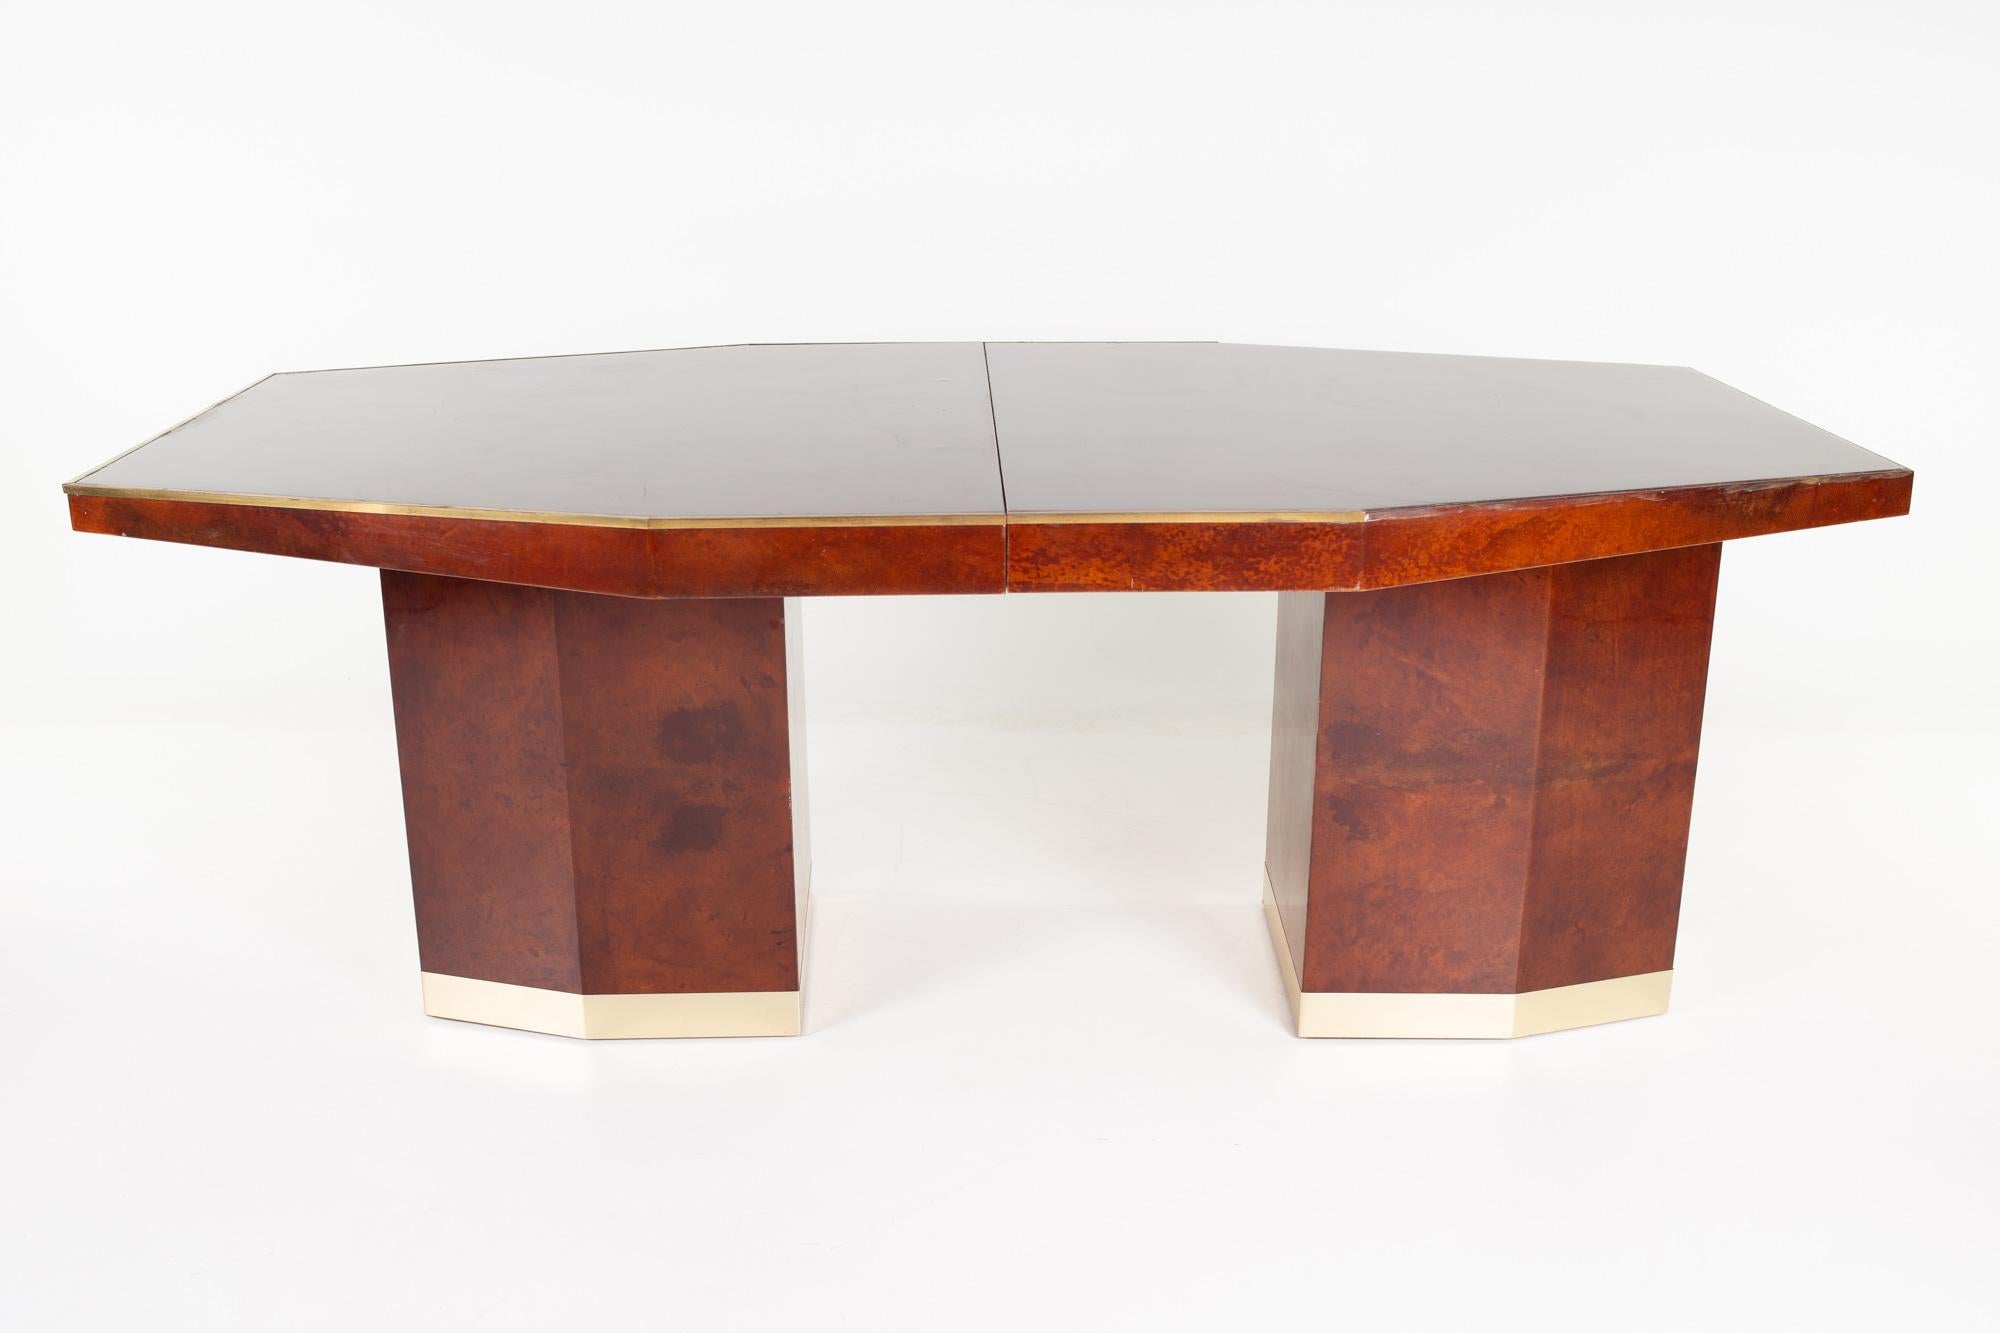 Table de salle à manger octogonale italienne du milieu du siècle en bois de loupe et laiton.

Cette table mesure : 78.75 de largeur x 43.5 de profondeur x 30 pouces de hauteur

Tous les meubles peuvent être achetés dans ce que nous appelons un